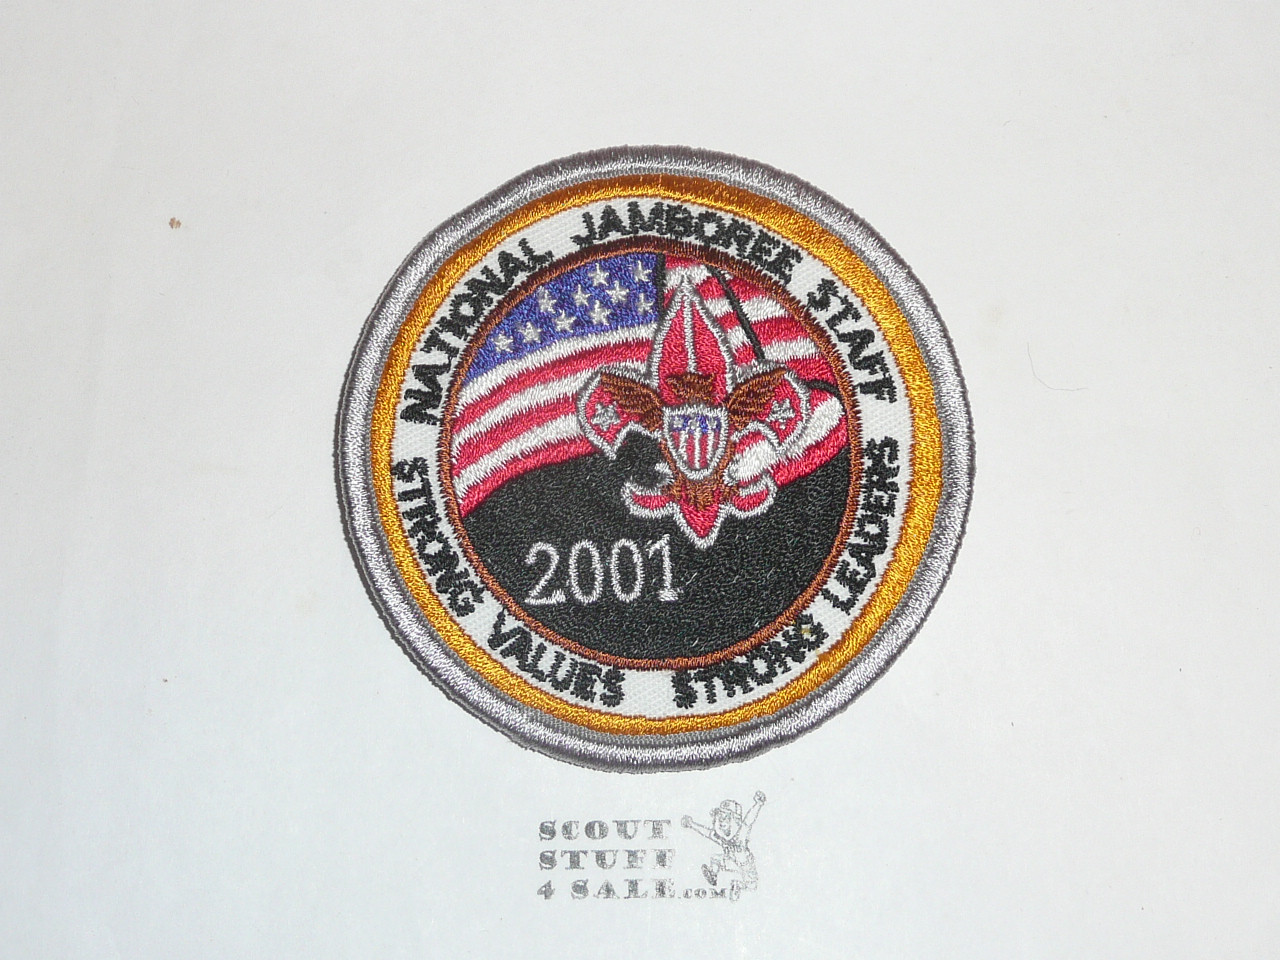 2001 National Jamboree STAFF Patch